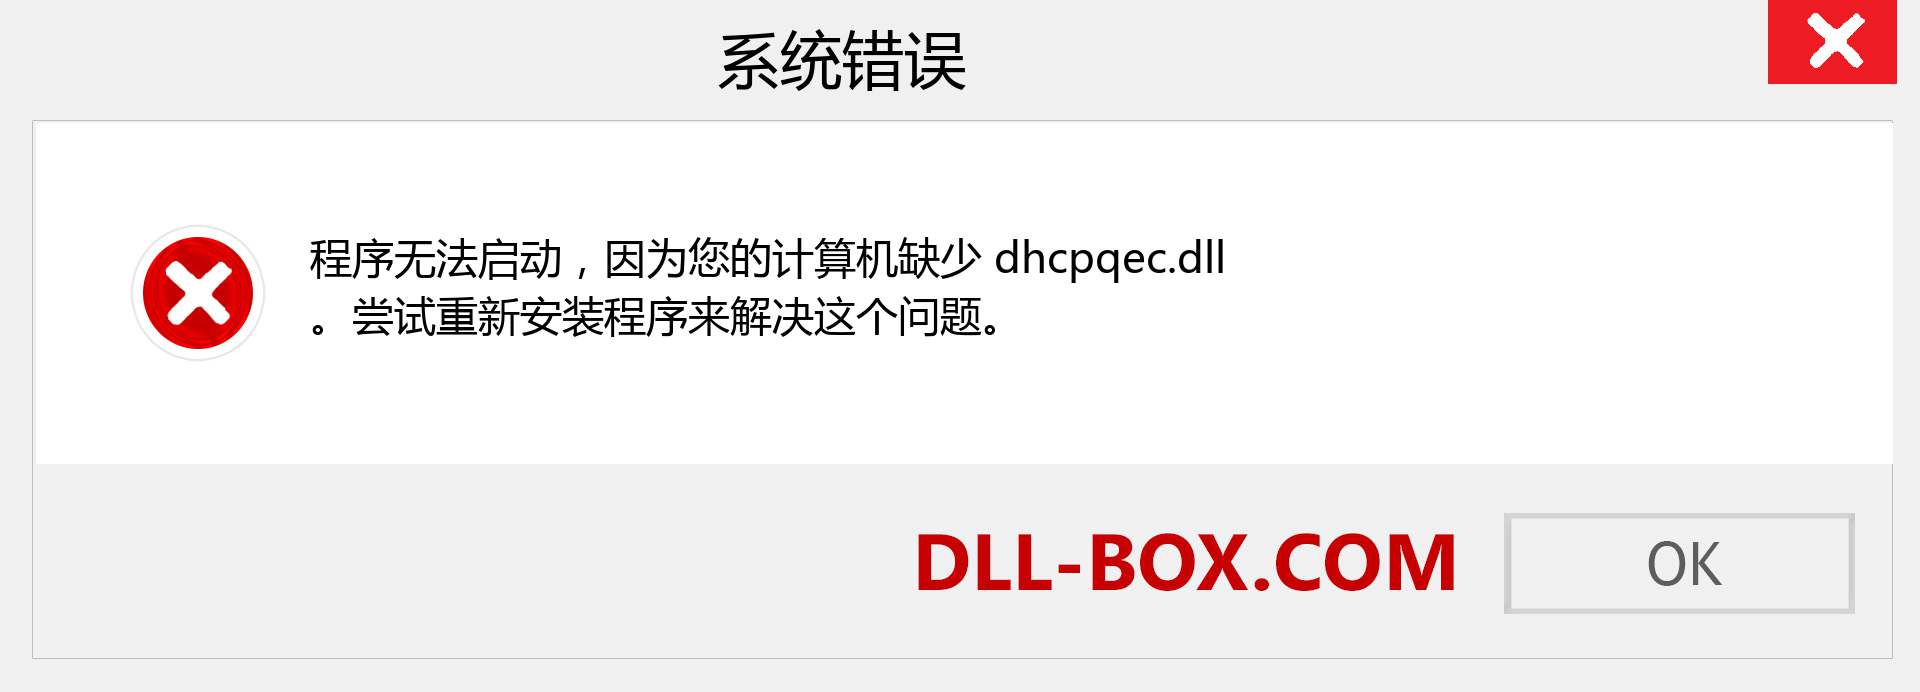 dhcpqec.dll 文件丢失？。 适用于 Windows 7、8、10 的下载 - 修复 Windows、照片、图像上的 dhcpqec dll 丢失错误